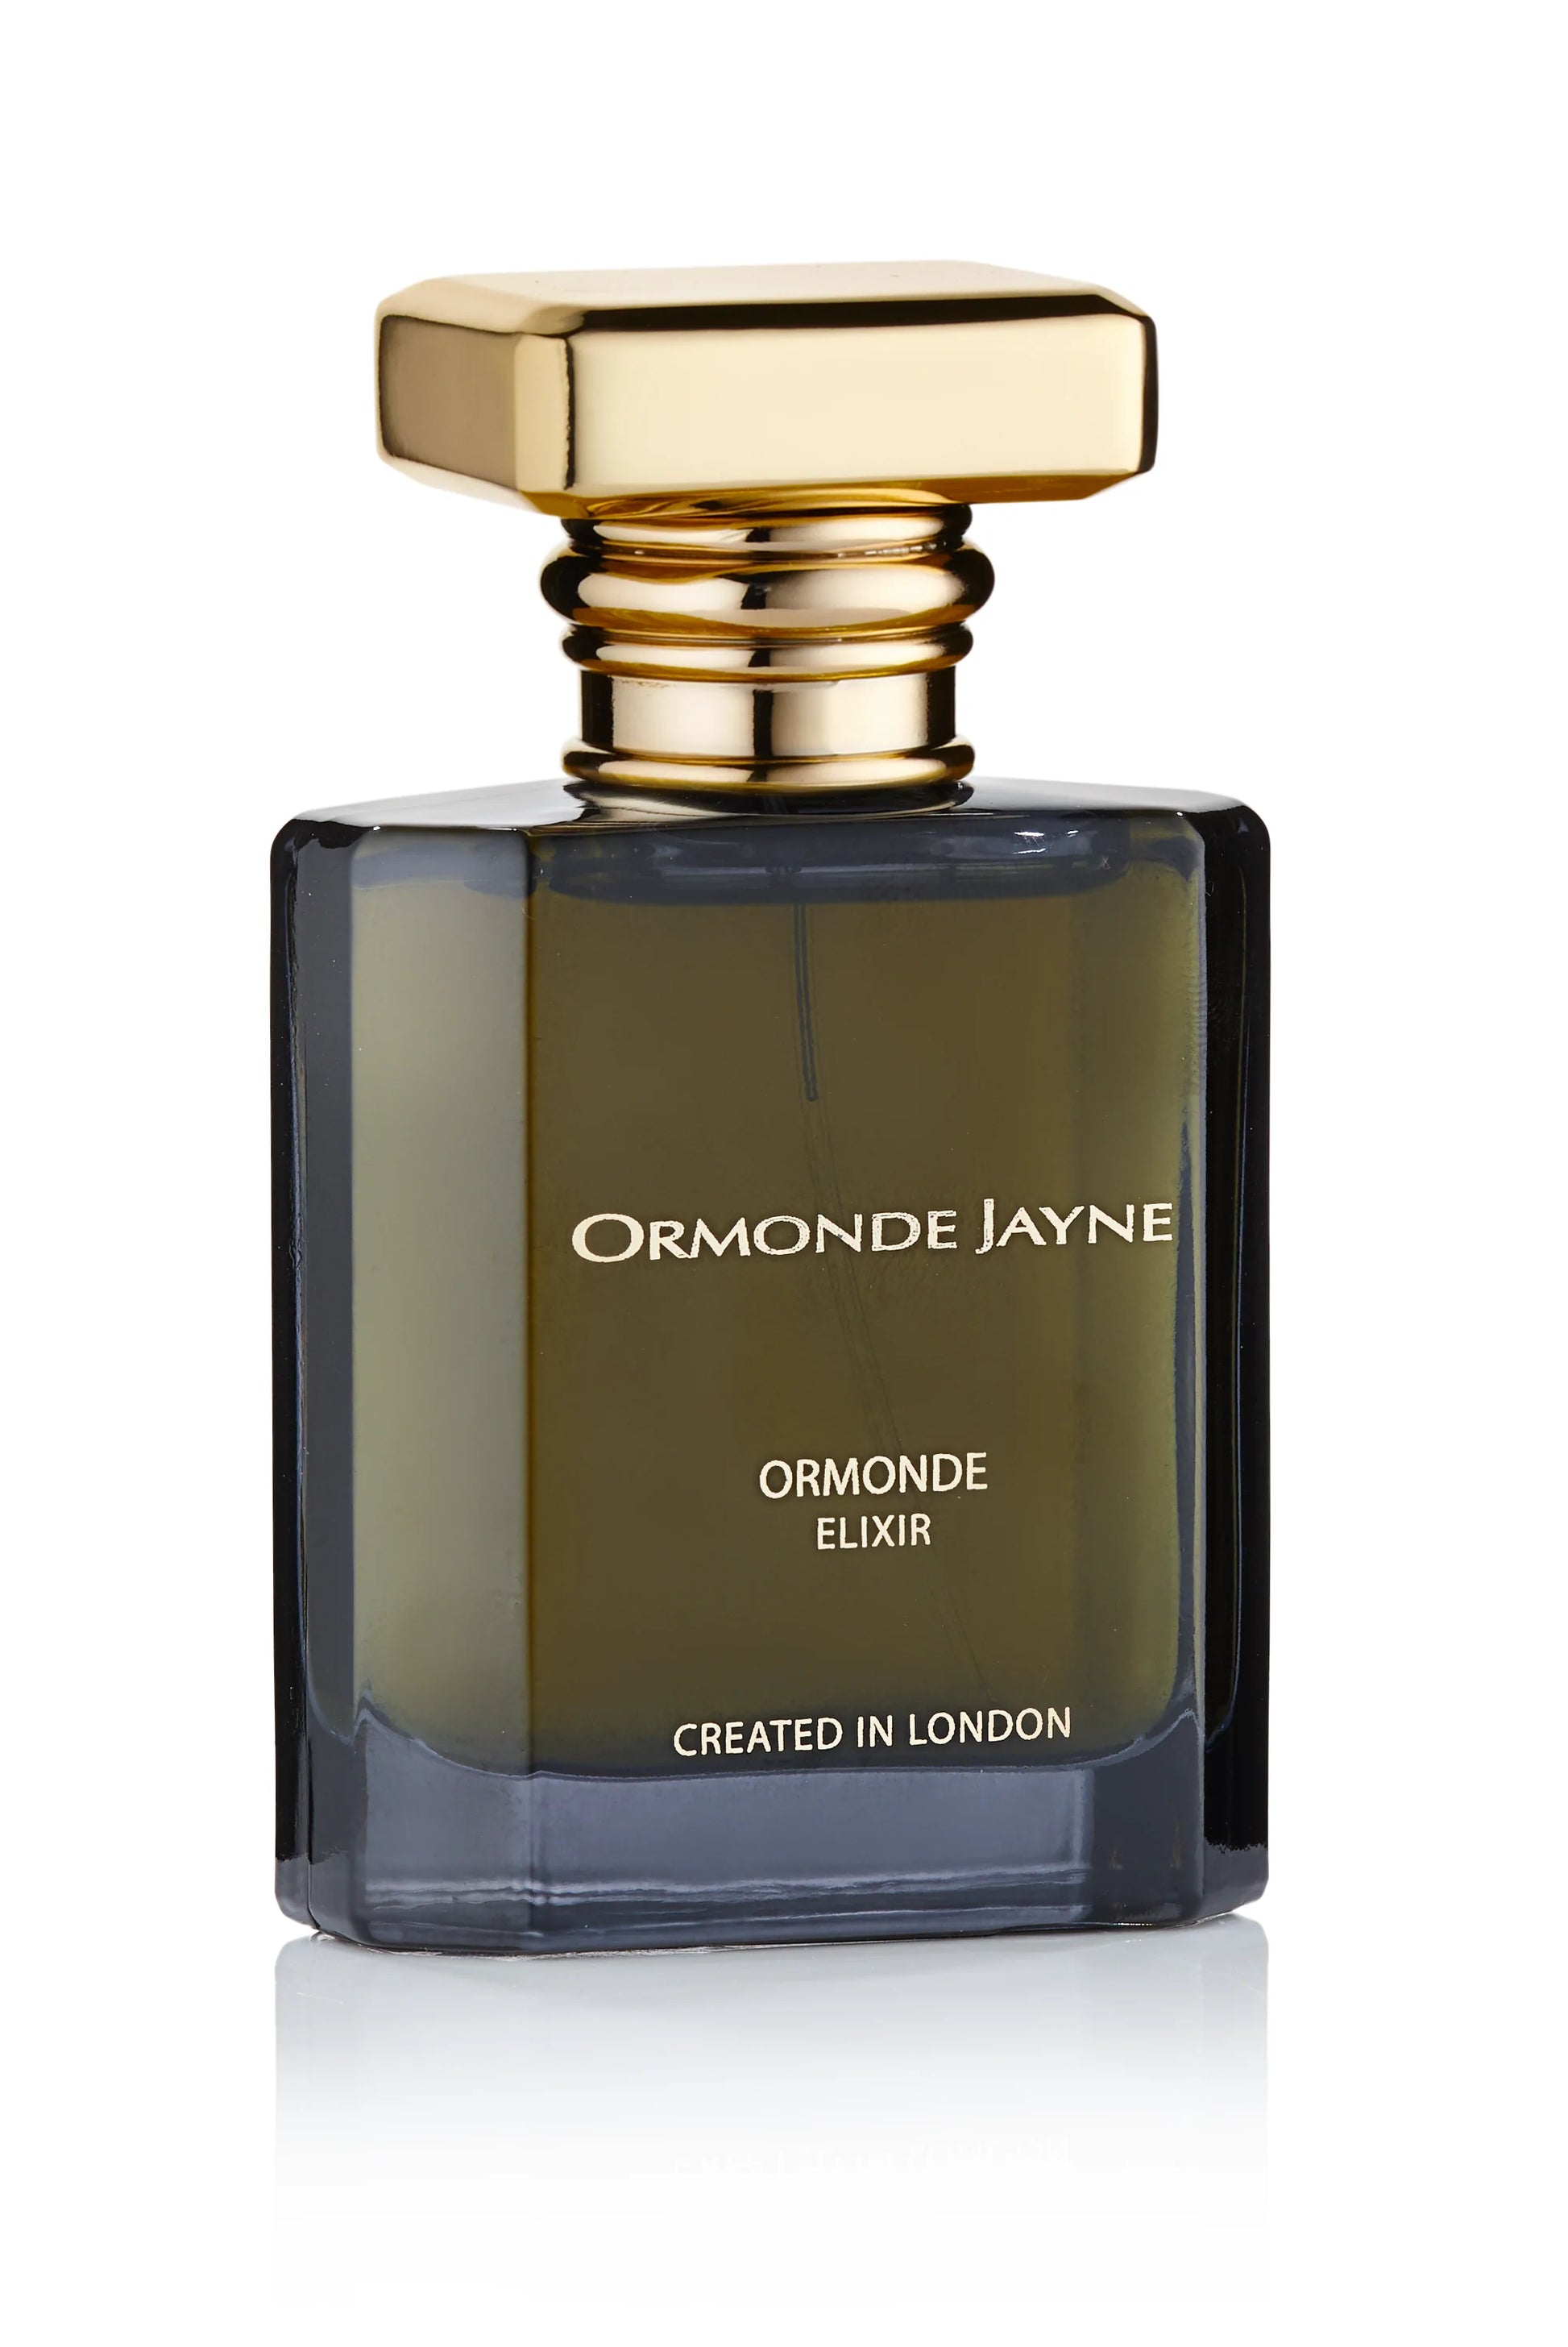 Ormonde Jayne Ormonde Elixir 2ml 0.06 fl. oz ametlik lõhnanäidis